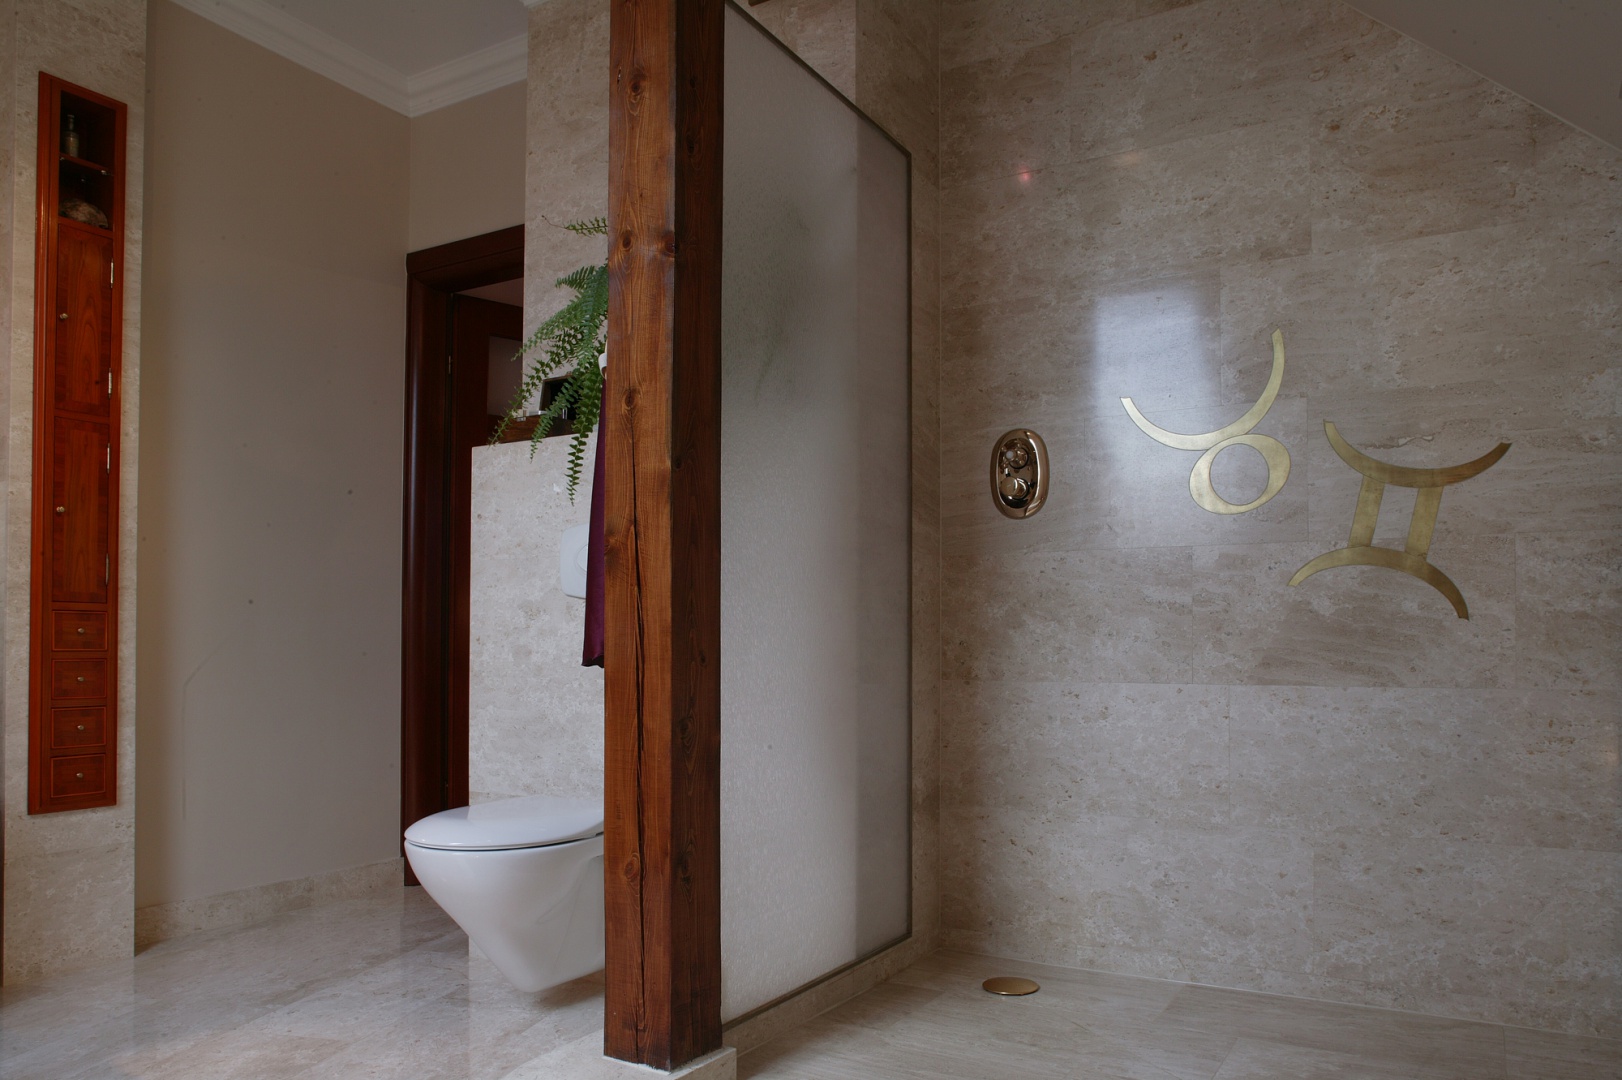 Otwarta na łazienkę kabina prysznicowa jest rozwiązaniem atrakcyjnym wizualnie. Ścianka ze zbrojonego szkła chroni przed zamoczeniem strefę w.c. Fot. Tomasz Markowski.